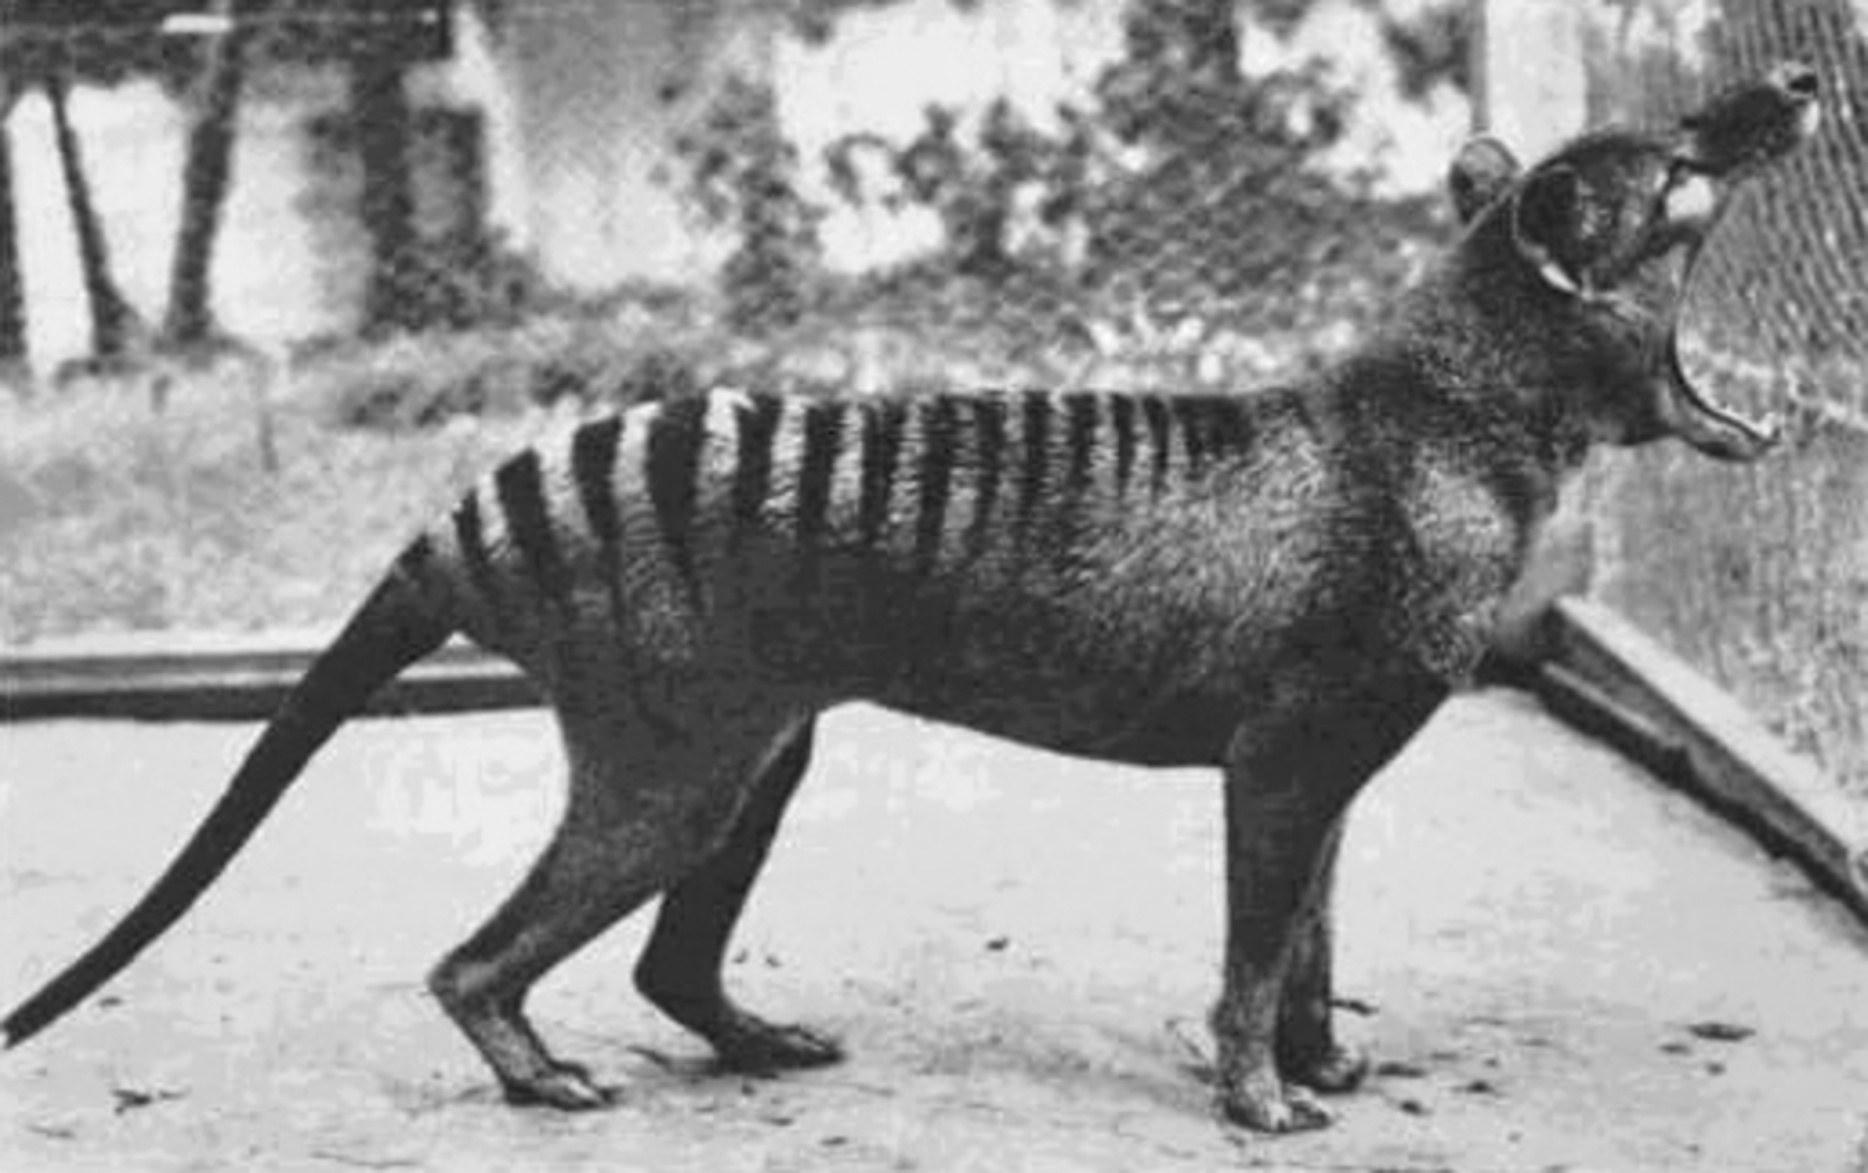 Thylacine a te kapab louvri machwè li nan yon limit etranj: jiska 80 degre.